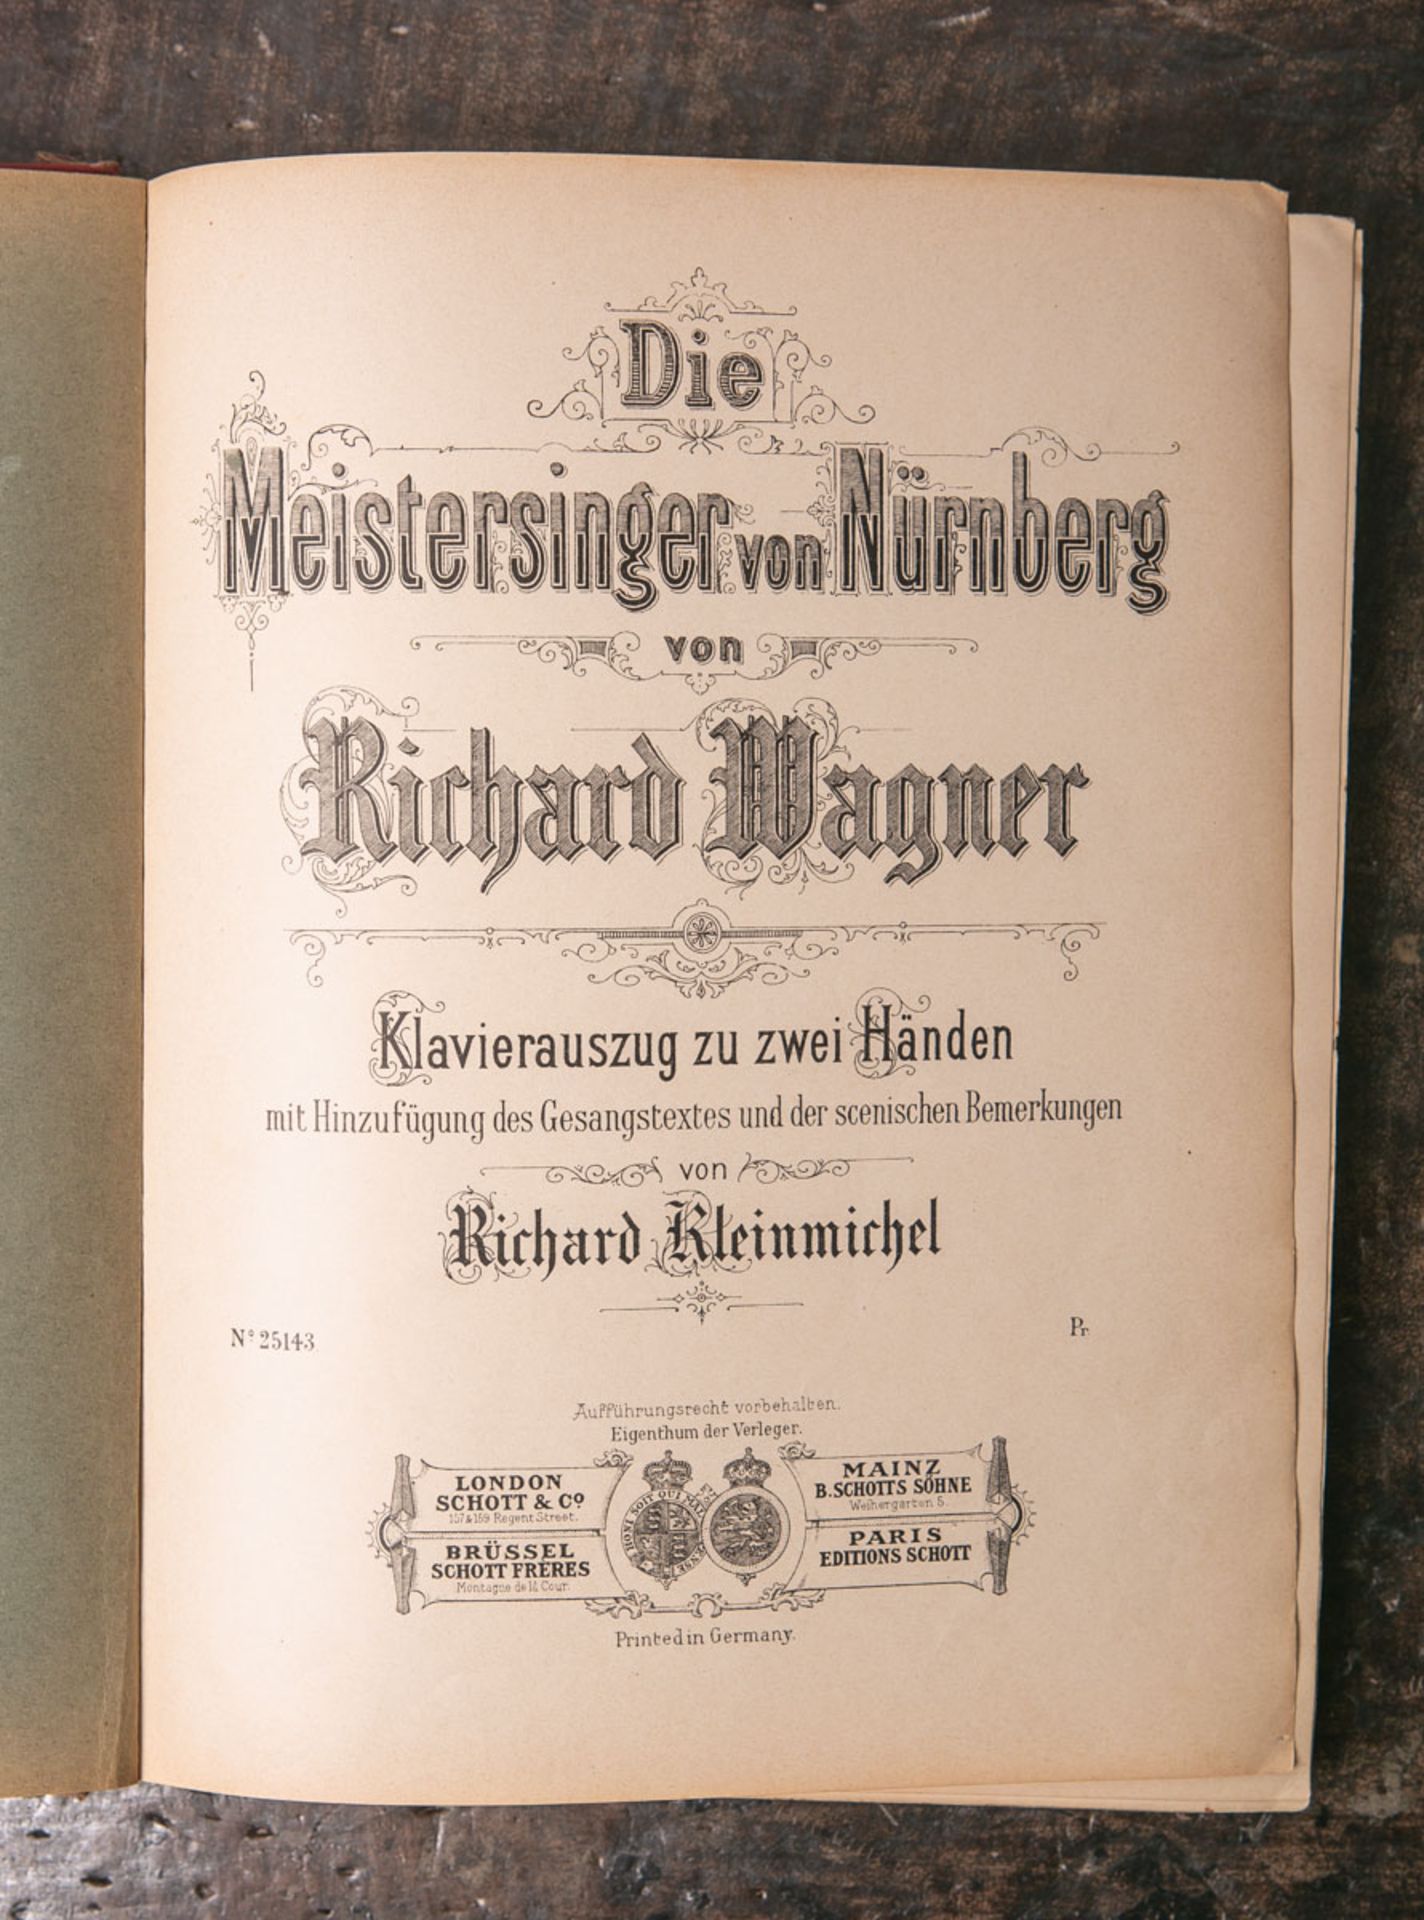 Kleinmichel, Richard (Hrsg.), "Die Meistersinger von Nürnberg von Richard Wagner", Klavierauszug